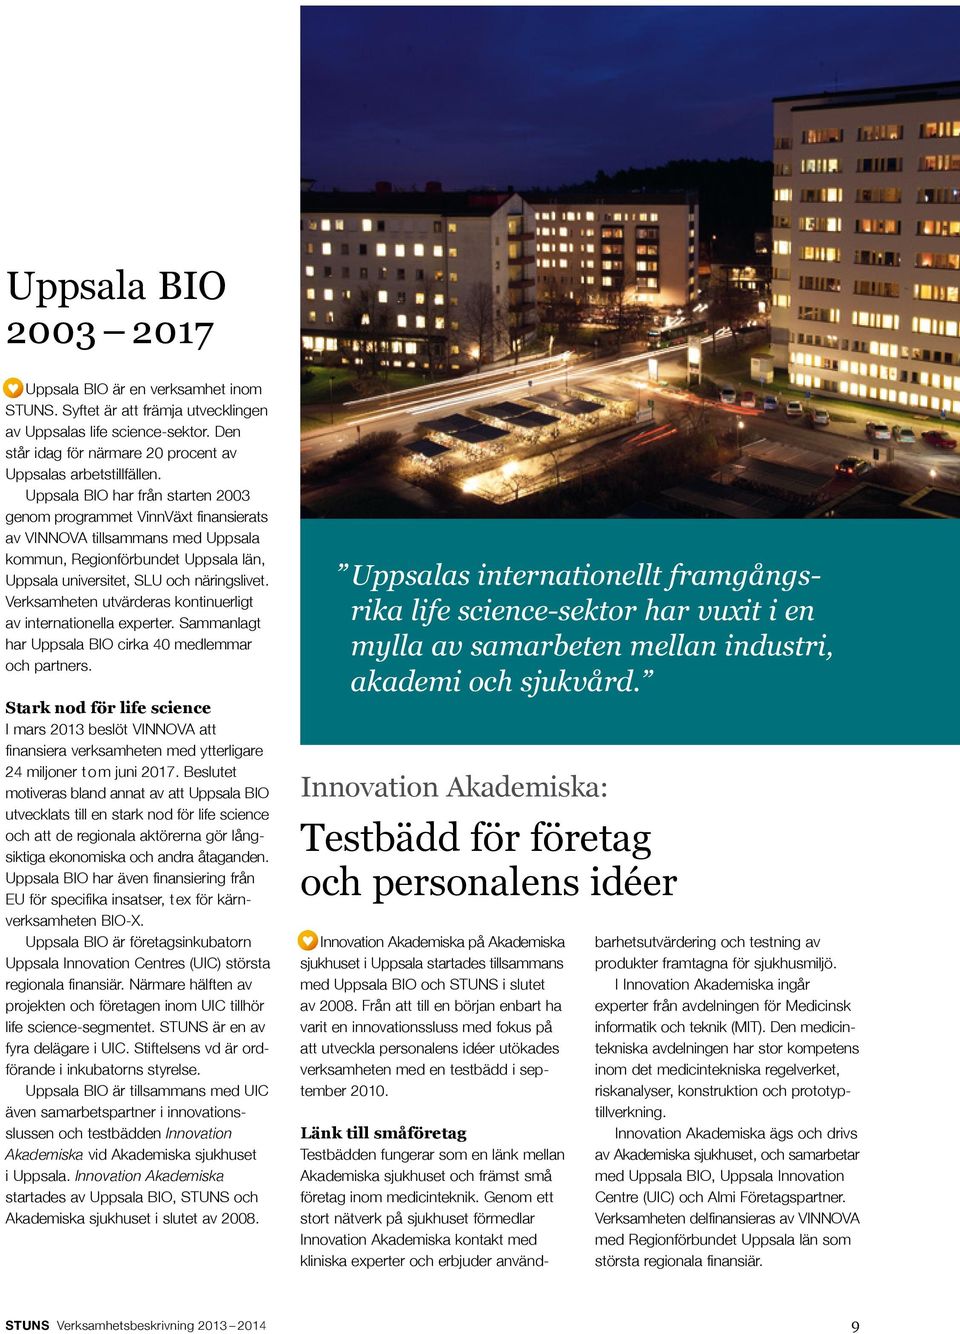 Verksamheten utvärderas kontinuerligt av internationella experter. Sammanlagt har Uppsala BIO cirka 40 medlemmar och partners.